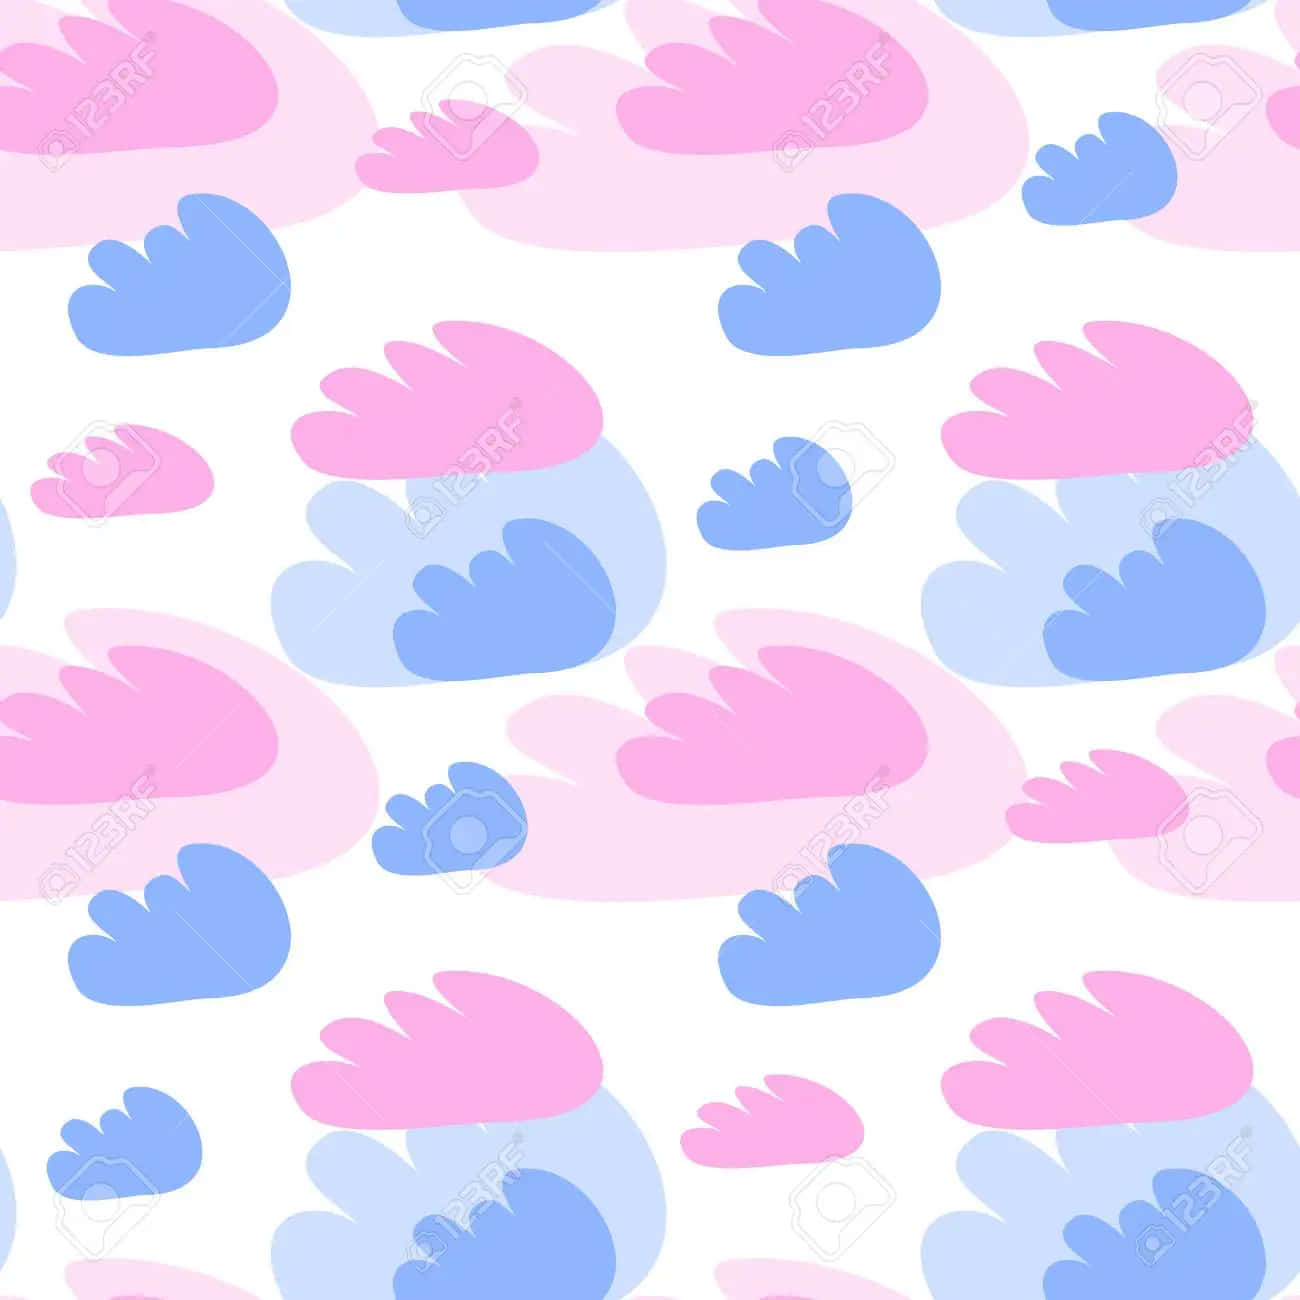 Patrónsin Fisuras De Nubes Rosas Y Azules. Fondo de pantalla